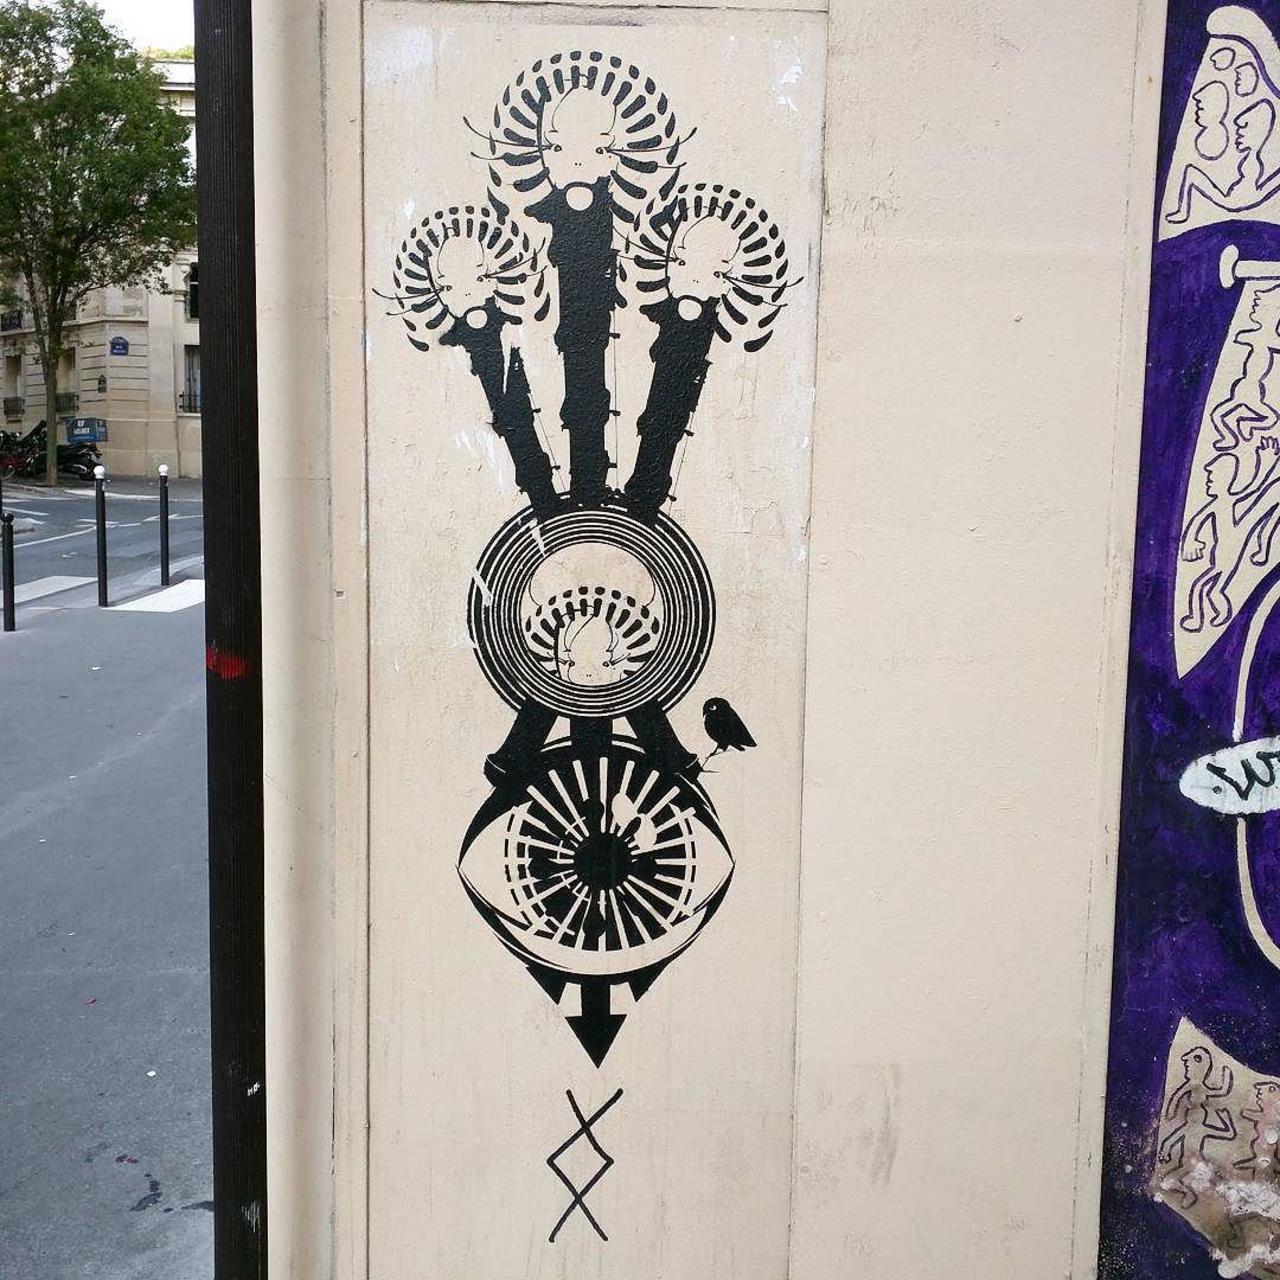 #Paris #graffiti photo by @alphaquadra http://ift.tt/1MvBsIL #StreetArt http://t.co/xcMlhRQPbF